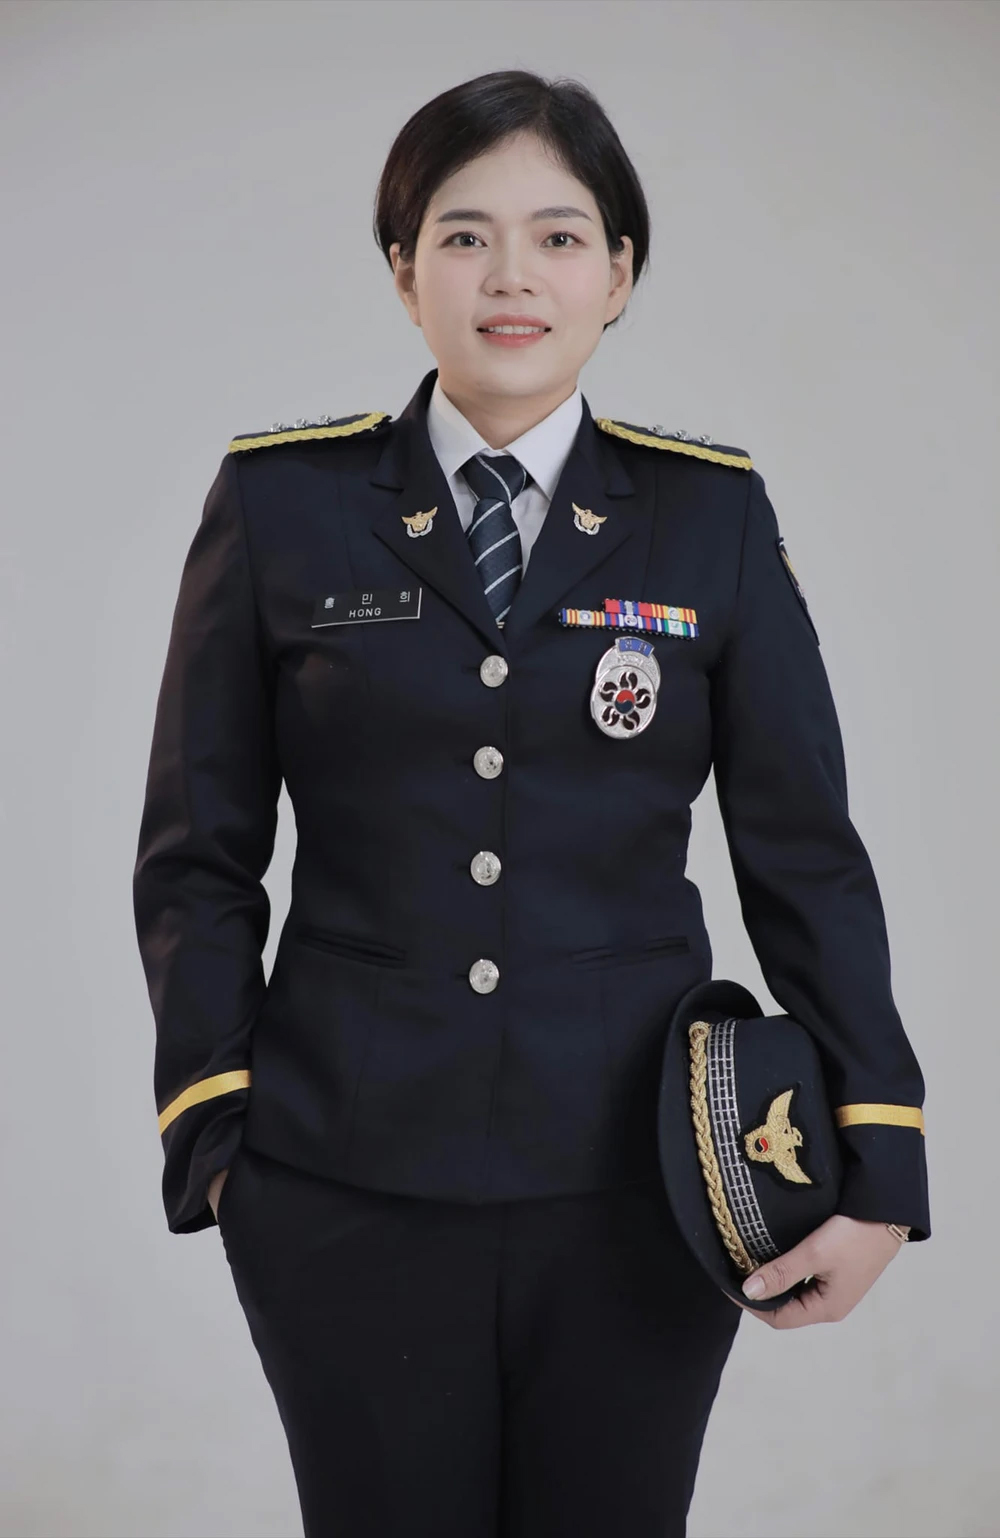 Chị Minh luôn có ước mơ được trở thành cảnh sát